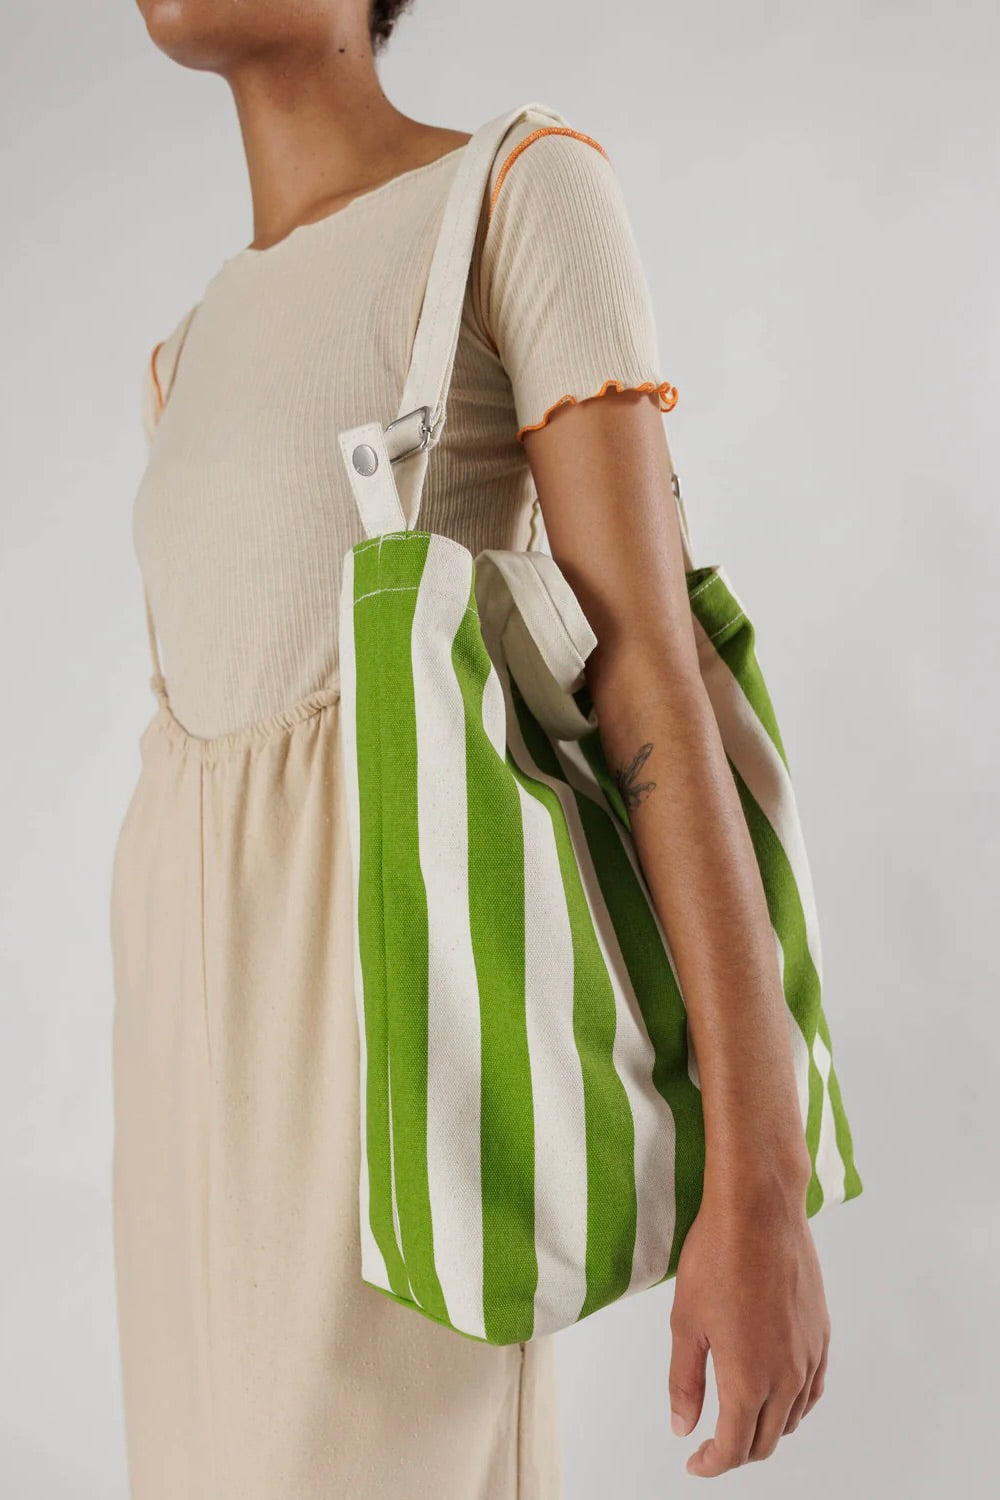 BAGGU Duck Bag, Green Awning Stripe